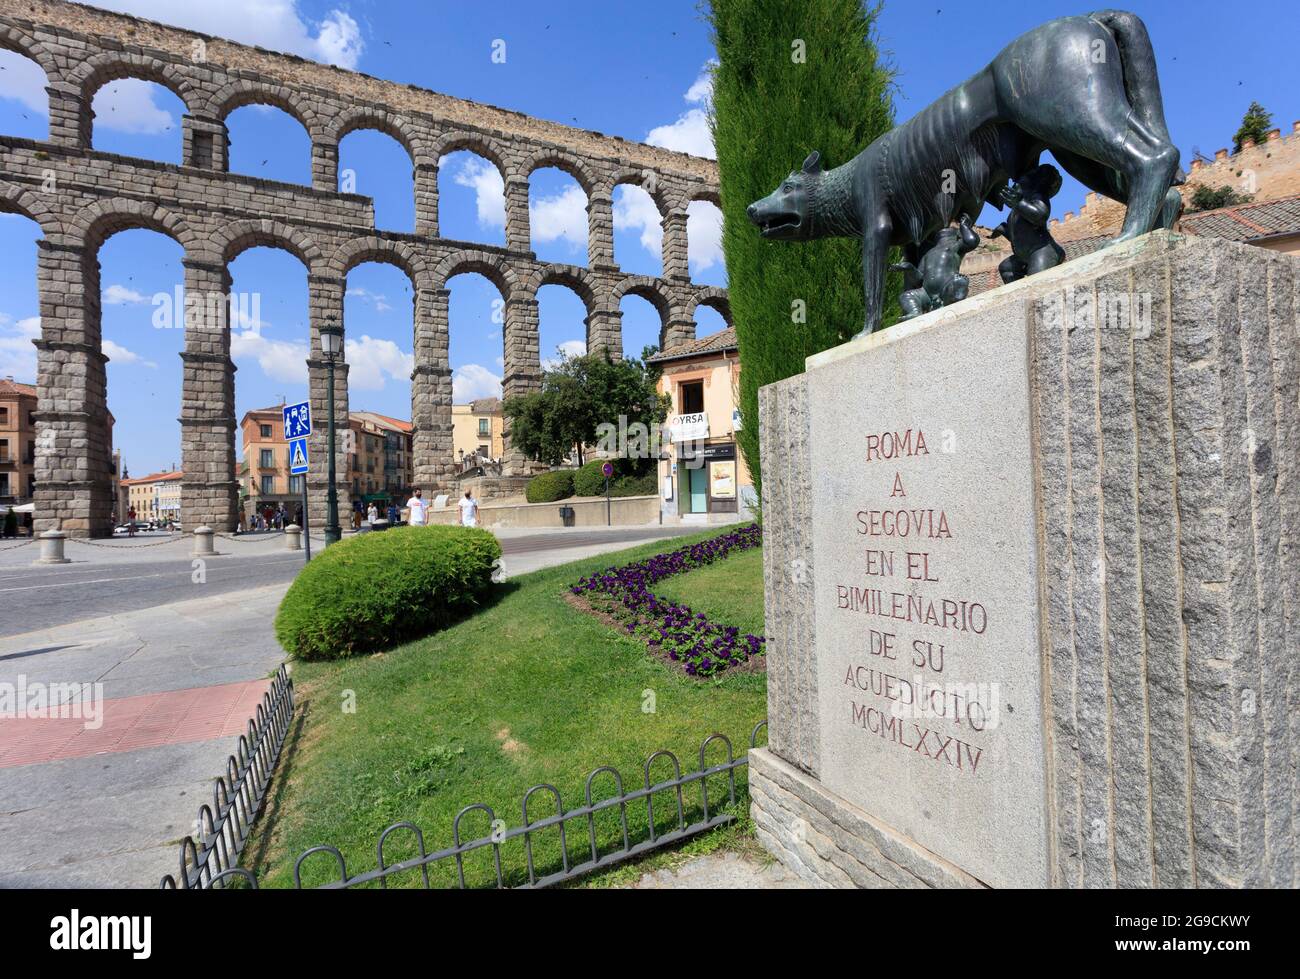 L'acquedotto di Segovia, un monumento romano dichiarato dall'UNESCO patrimonio dell'umanità. Spagna Foto Stock